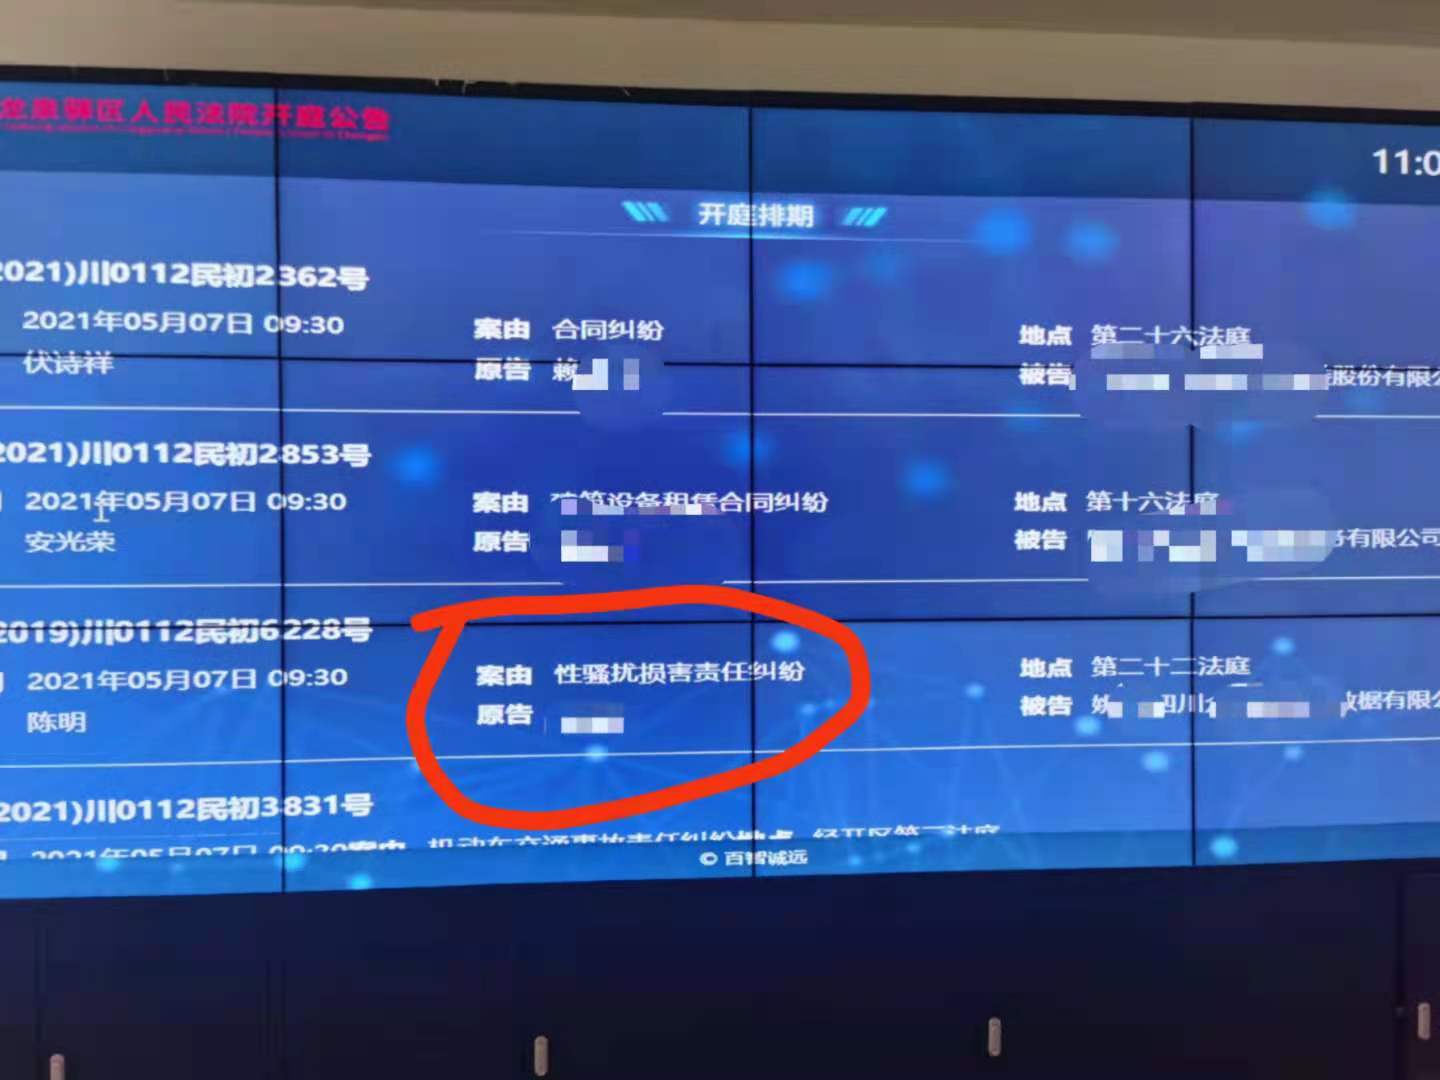 5月7日，法院大屏幕上显示开庭信息。 新京报记者 苑苏文 摄